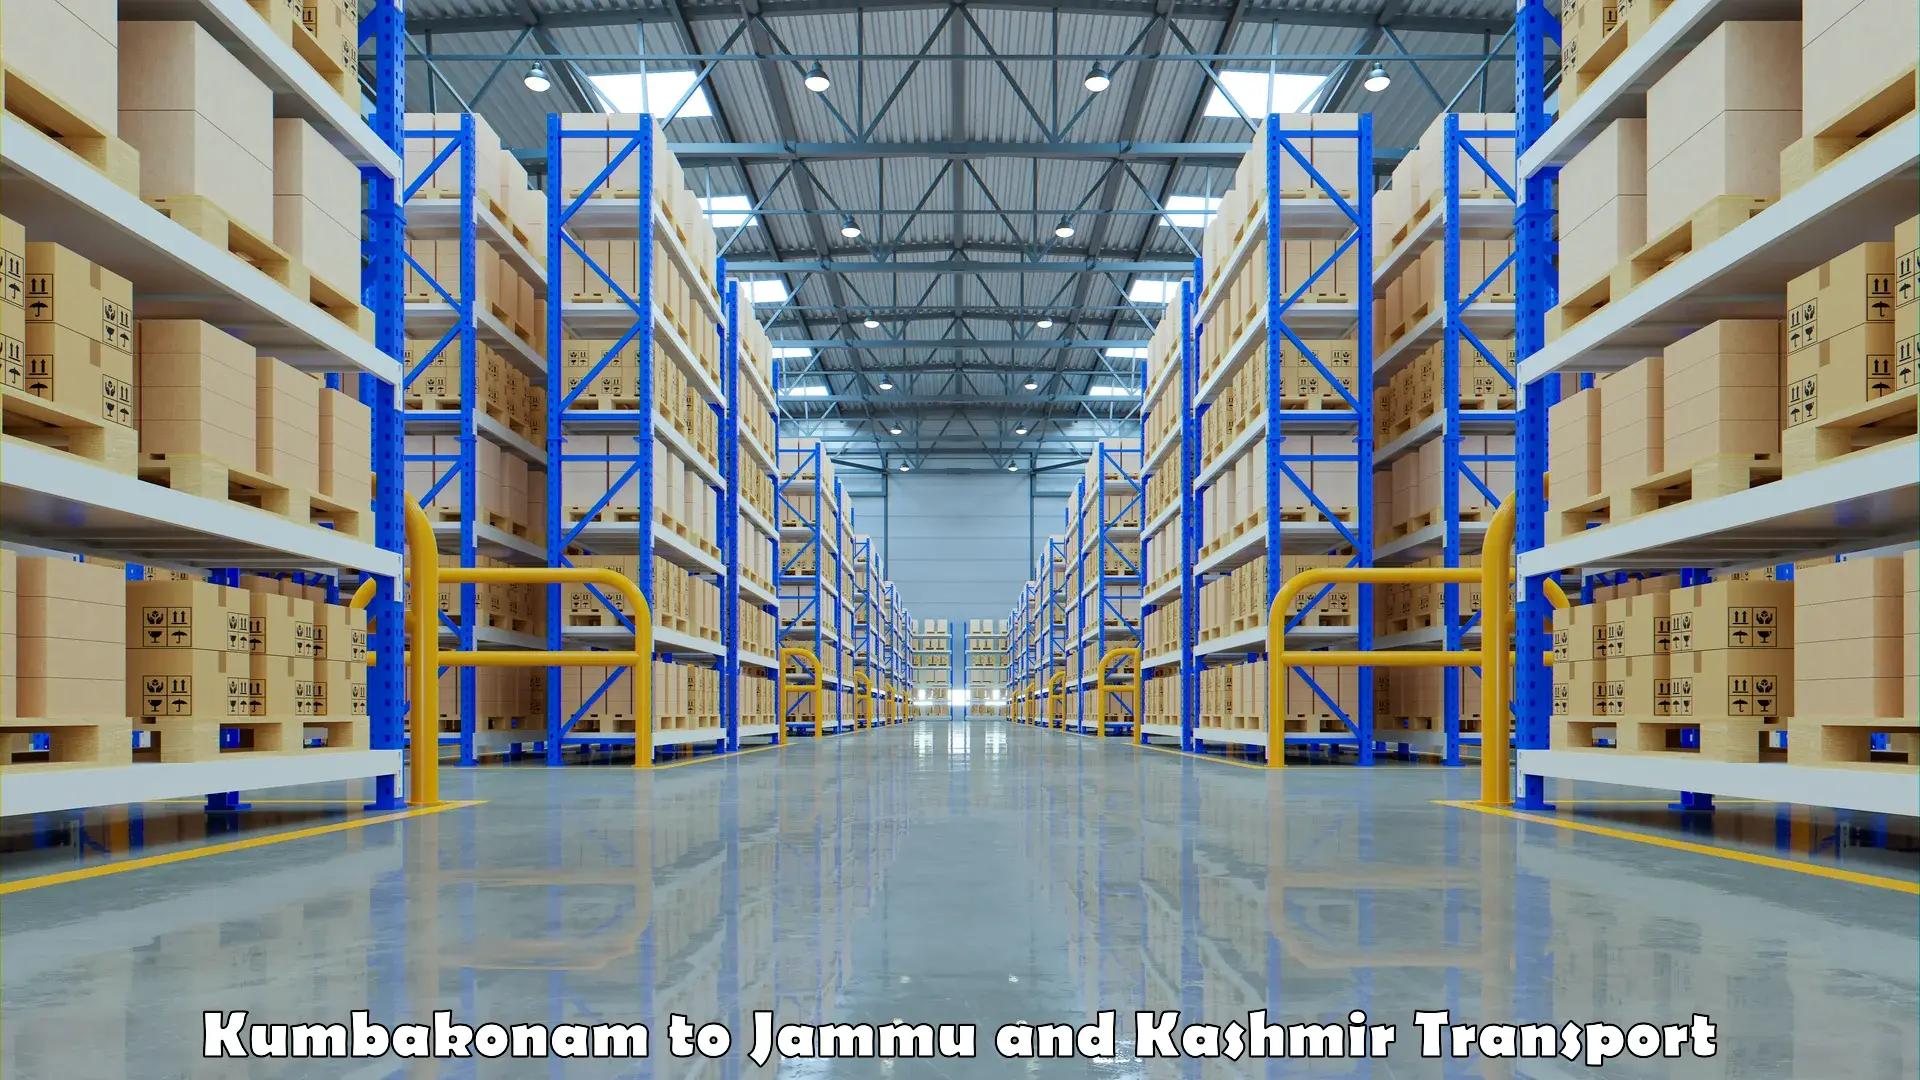 Daily transport service Kumbakonam to Jammu and Kashmir